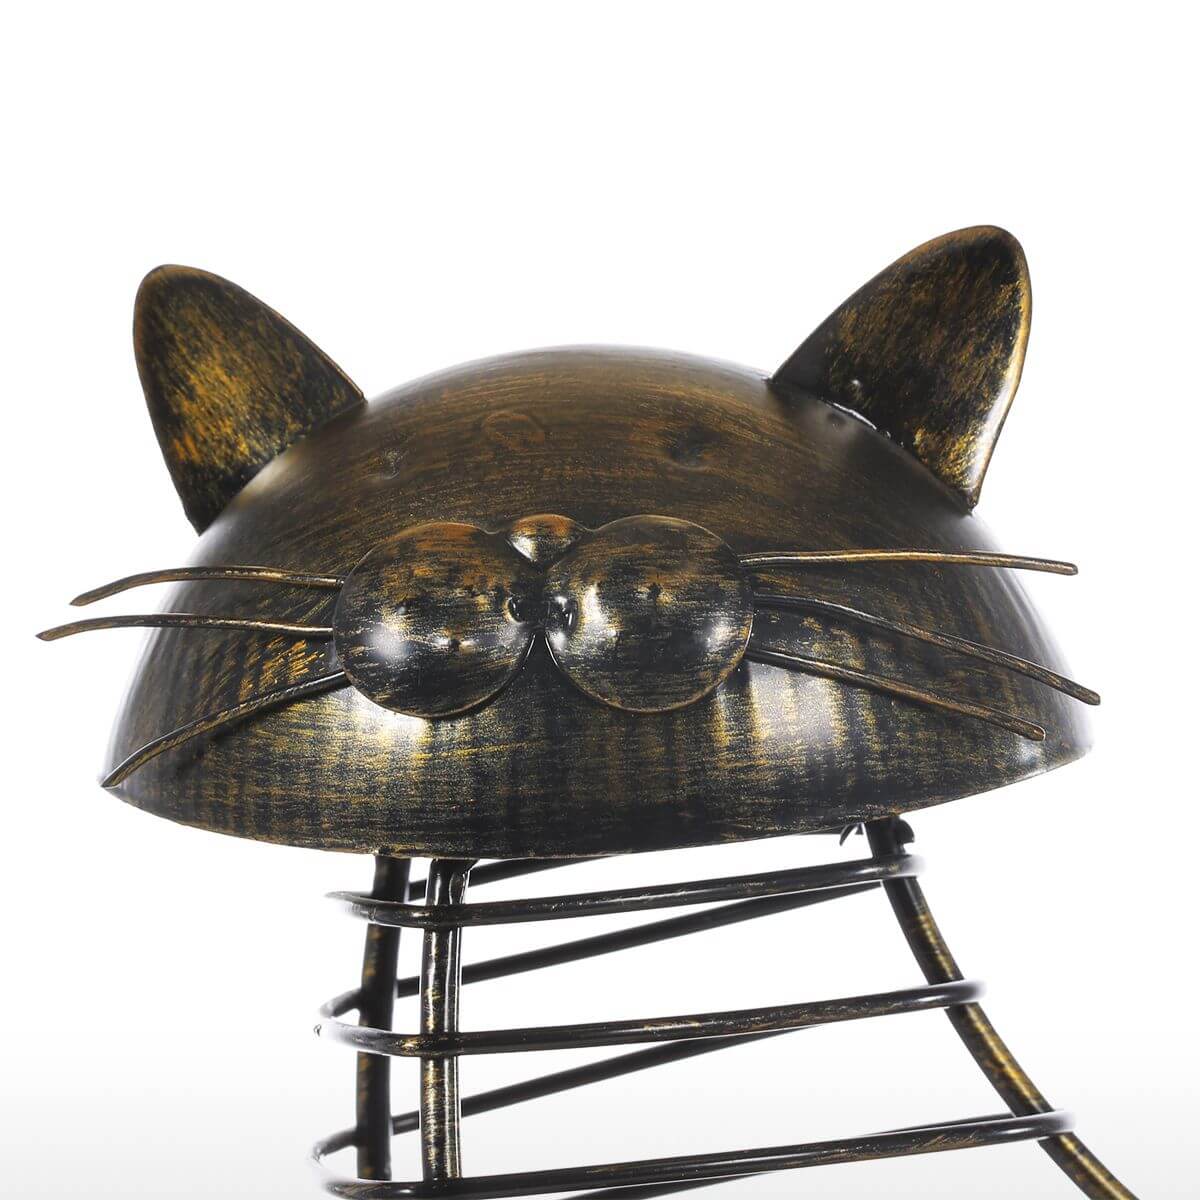 Metal Cat Figurines Cork Container - MaviGadget